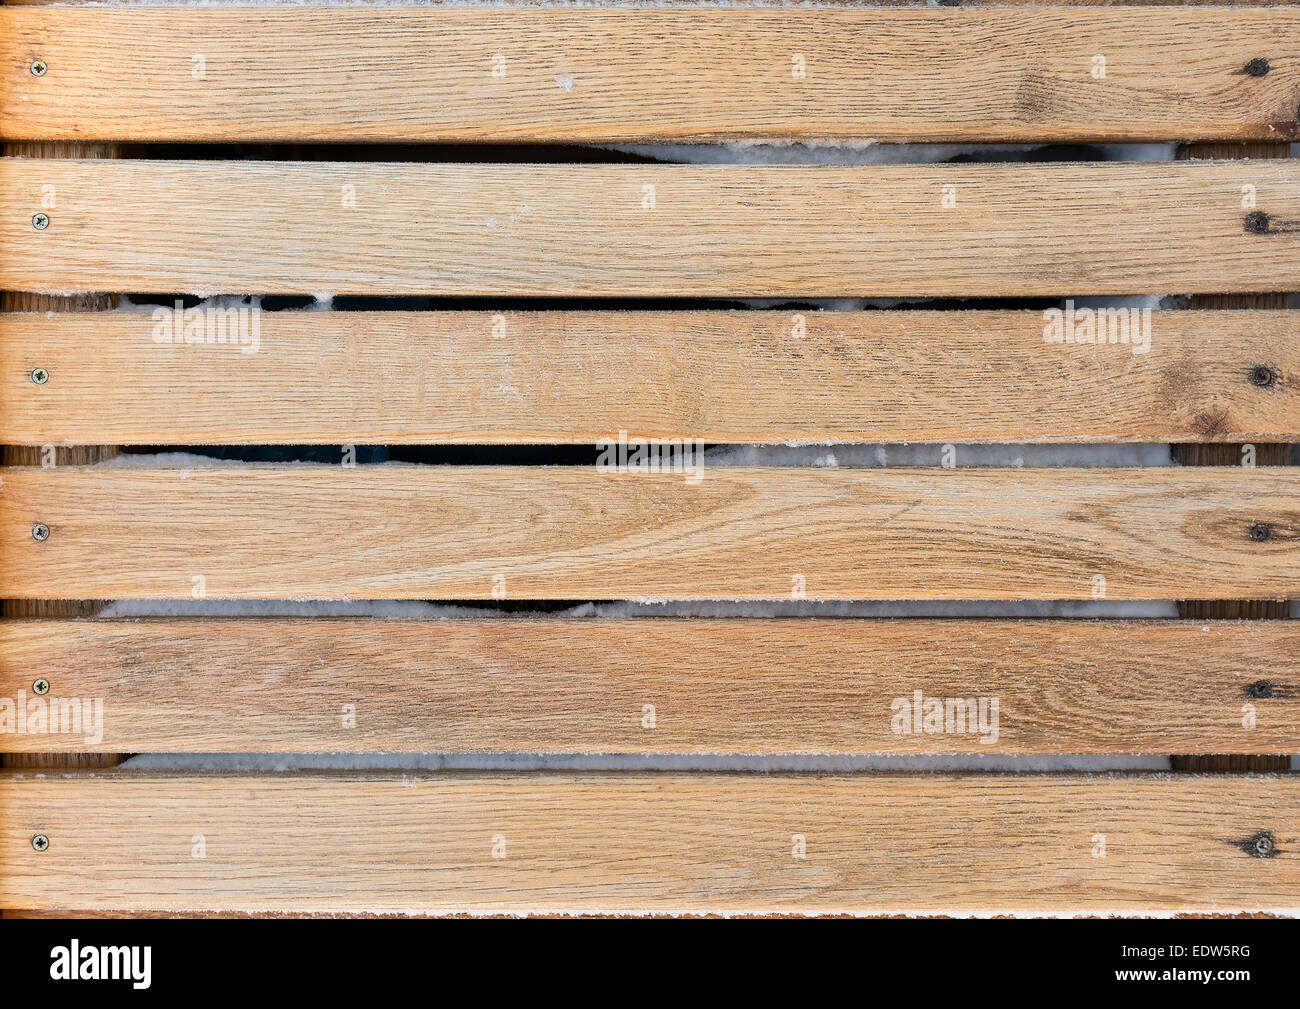 Frozen wooden oak lath board background Stock Photo